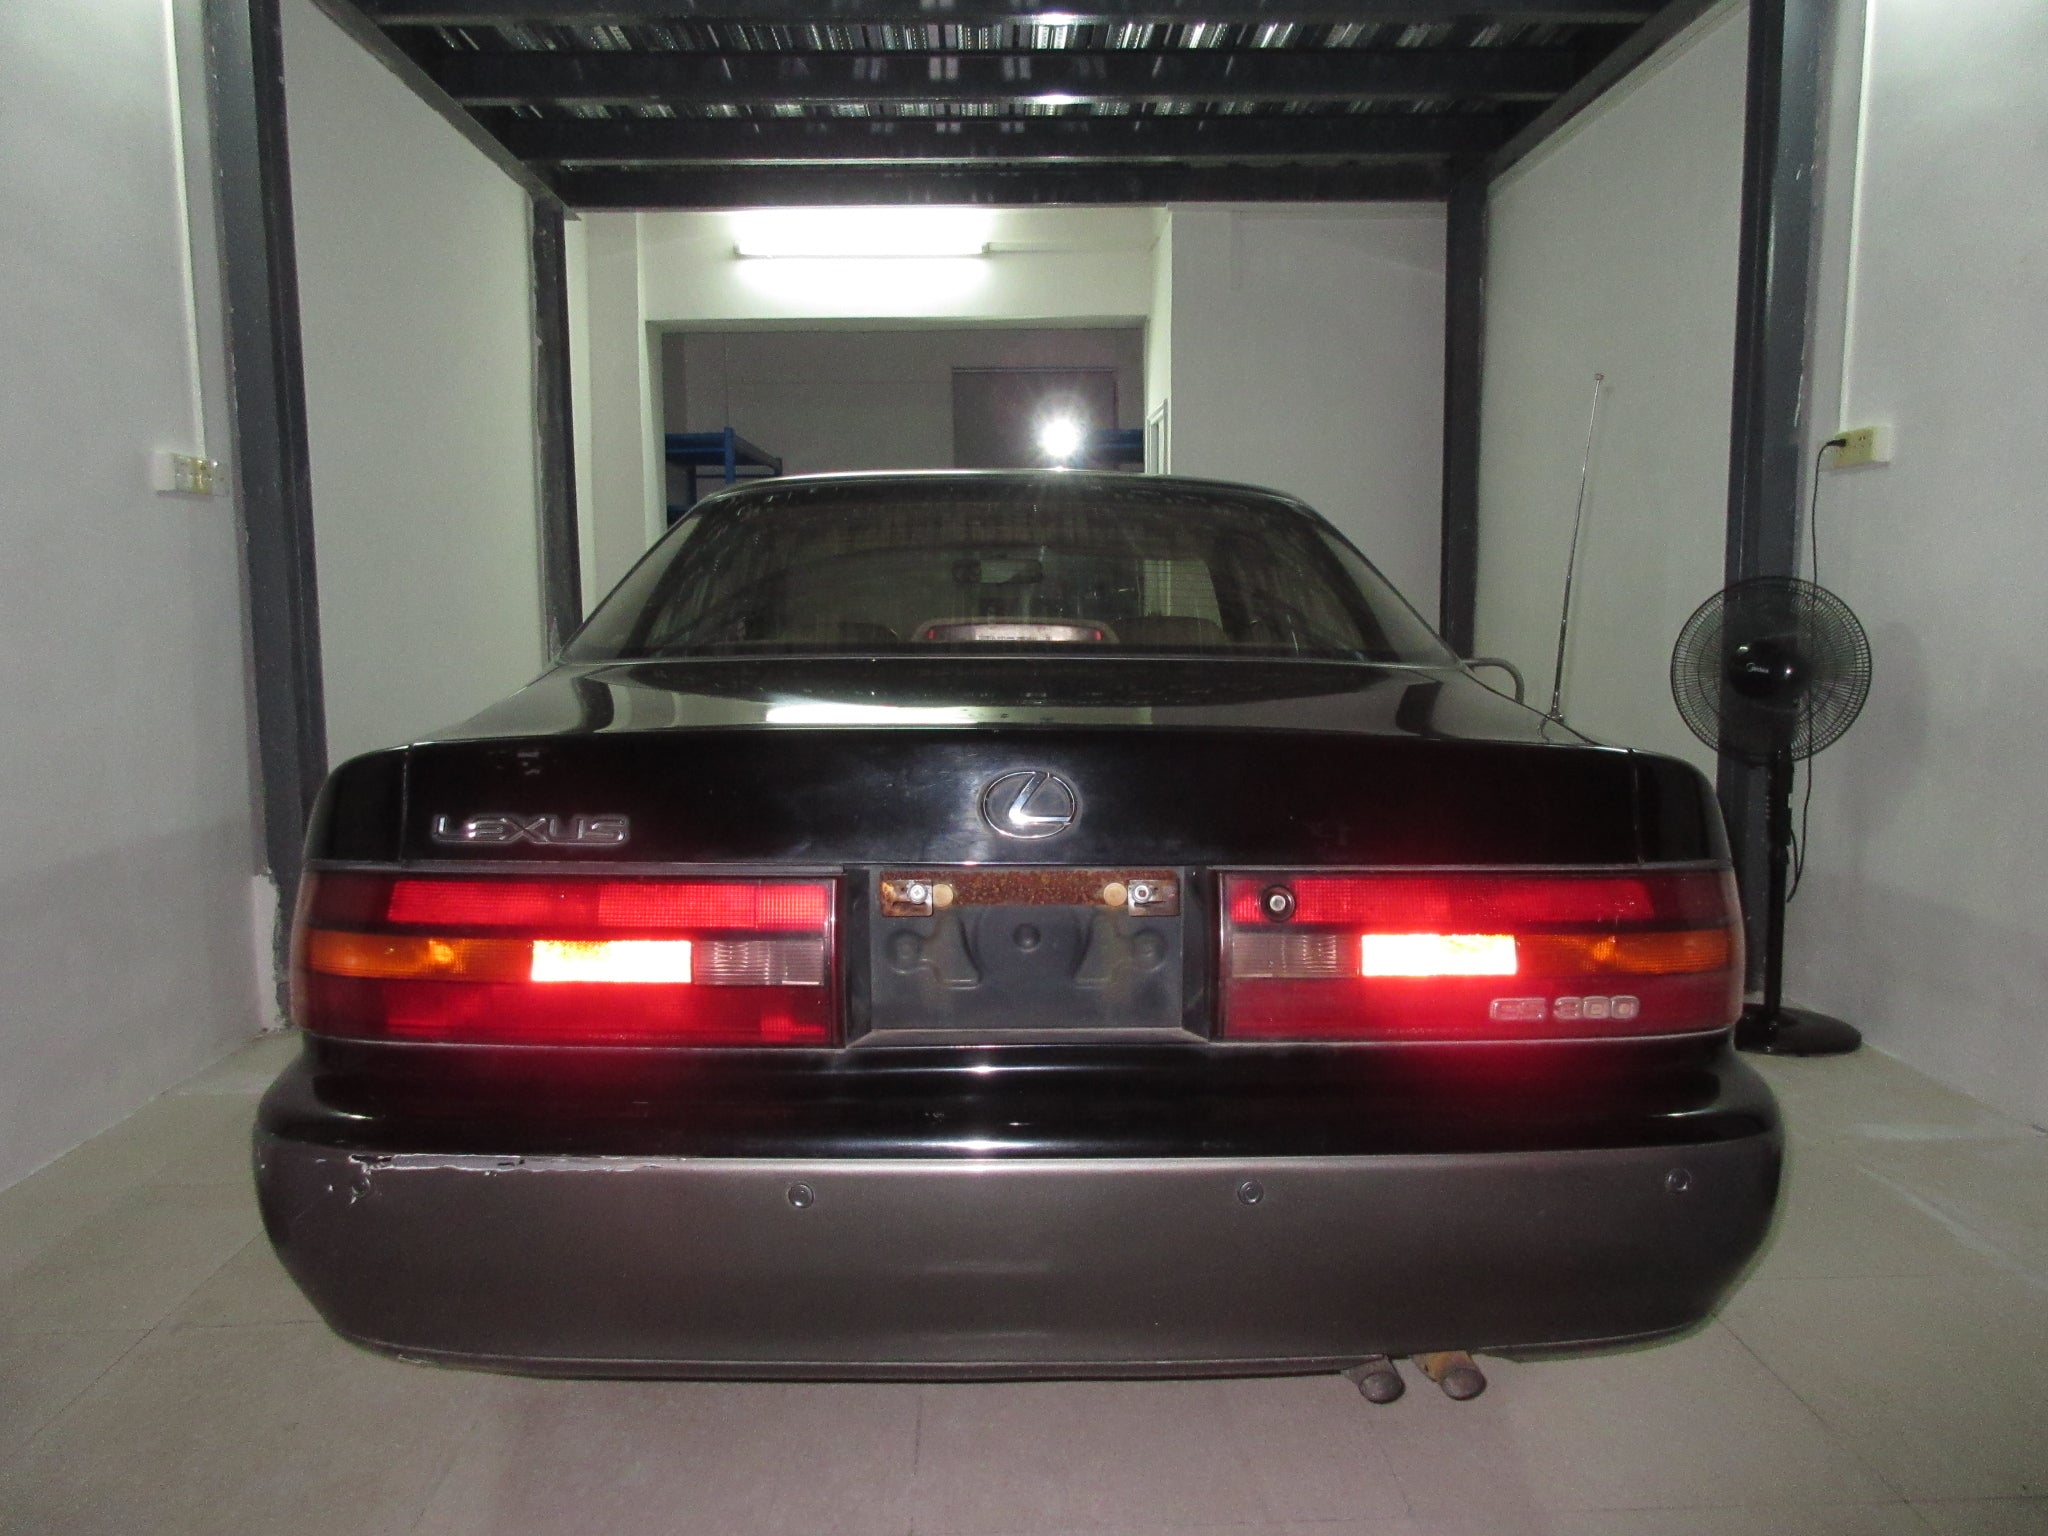 1993 Lexus ES300 3VZ-FE - Project Picture Gallery